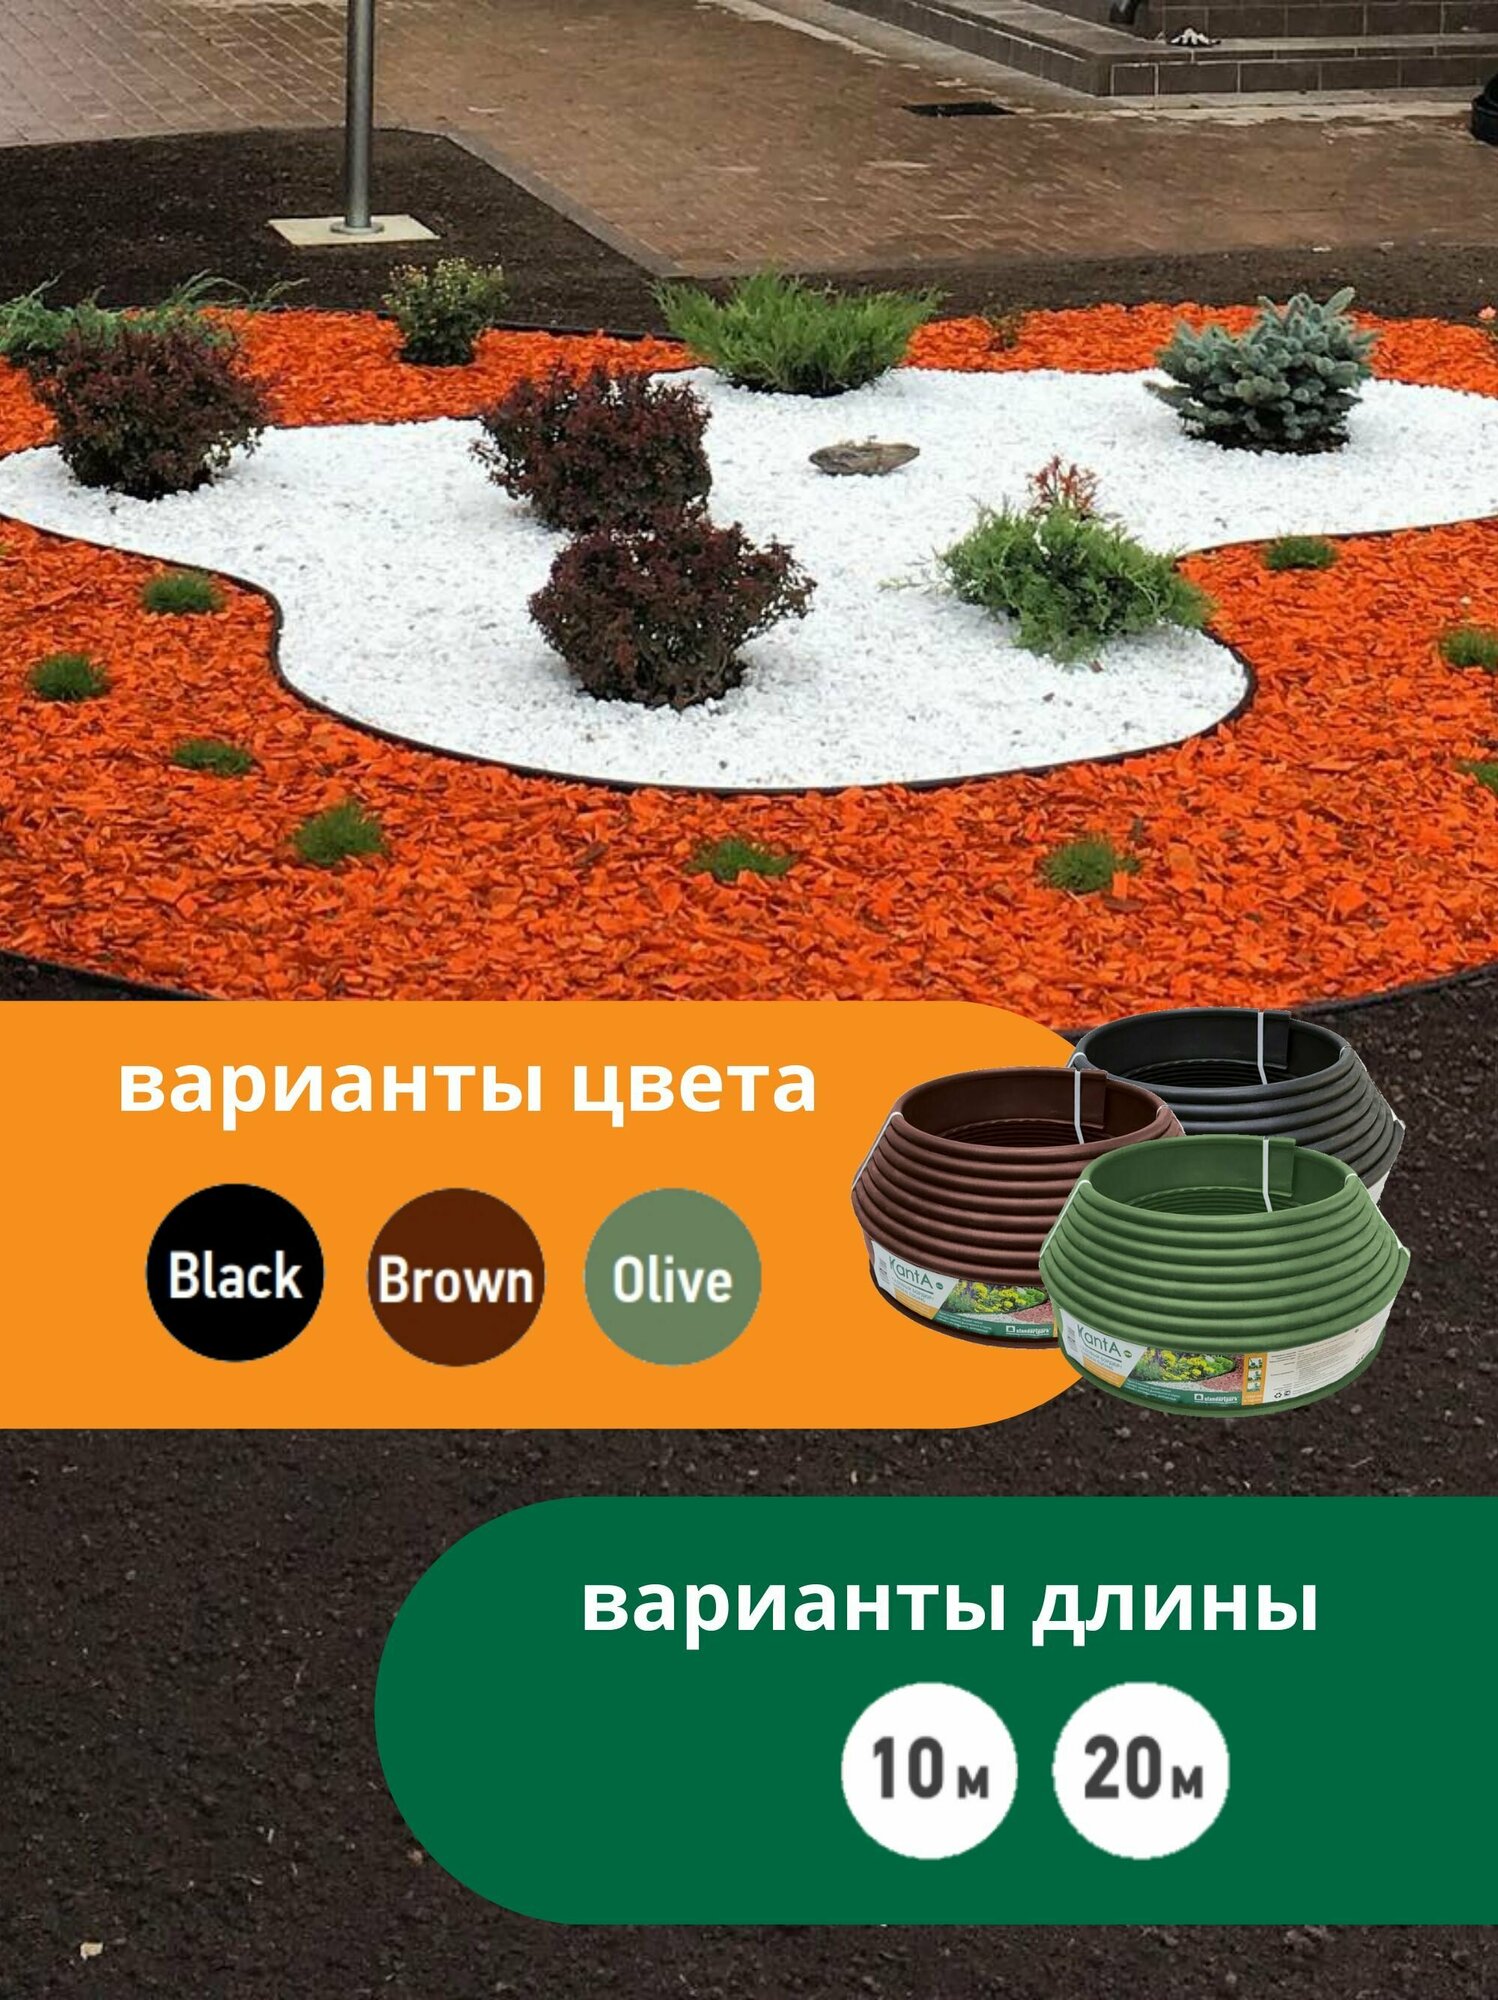 Бордюр садовый Стандартпарк Канта Плюс (Standartpark KANTA Plus), черный, длина 20 м, высота 11 см, диаметр трубки 2.1 см - фотография № 3